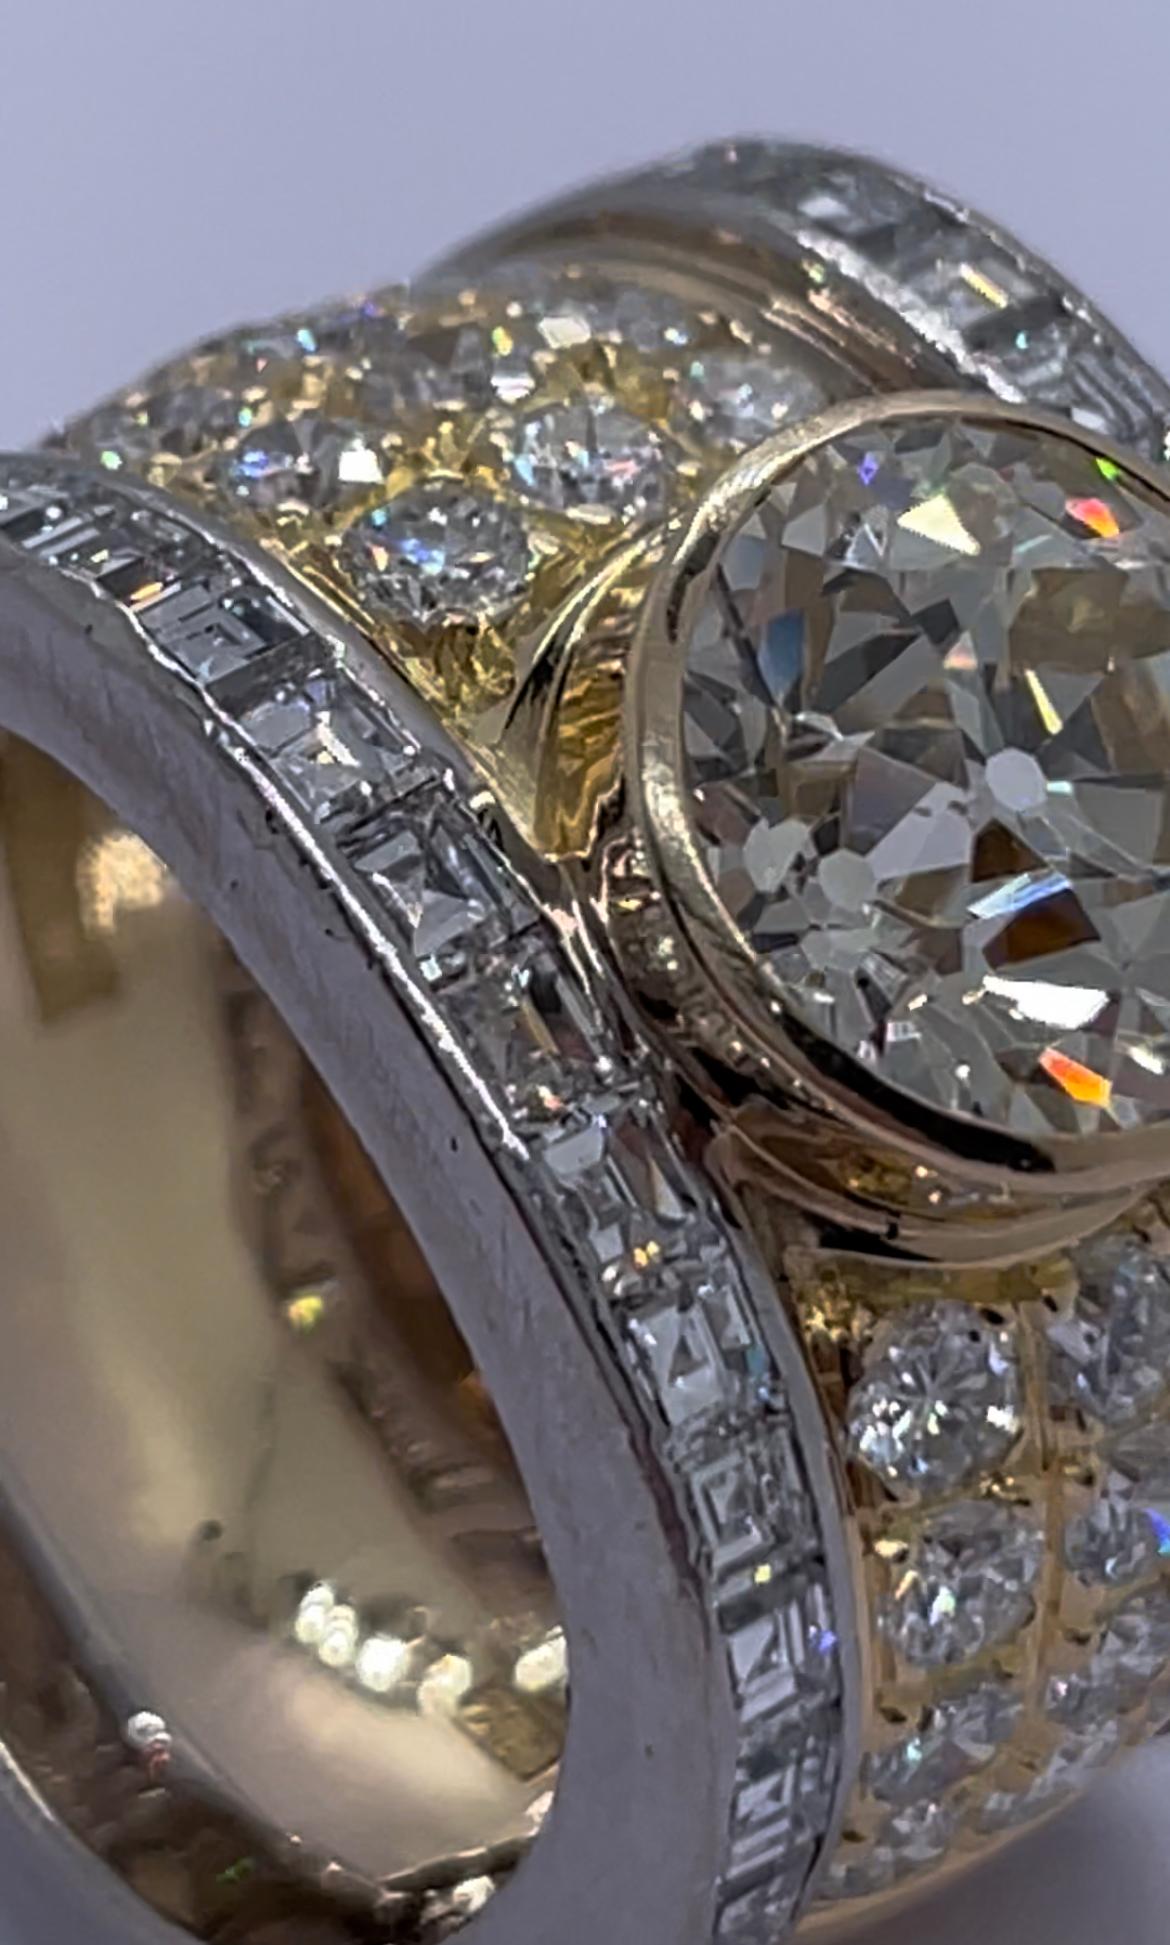 Cette magnifique bague ancienne en diamant de taille européenne est une pièce unique conçue par SCHILLING au début du 20ème siècle. La bague comporte un diamant principal de 3,5 ct de qualité supérieure entouré de magnifiques diamants blancs